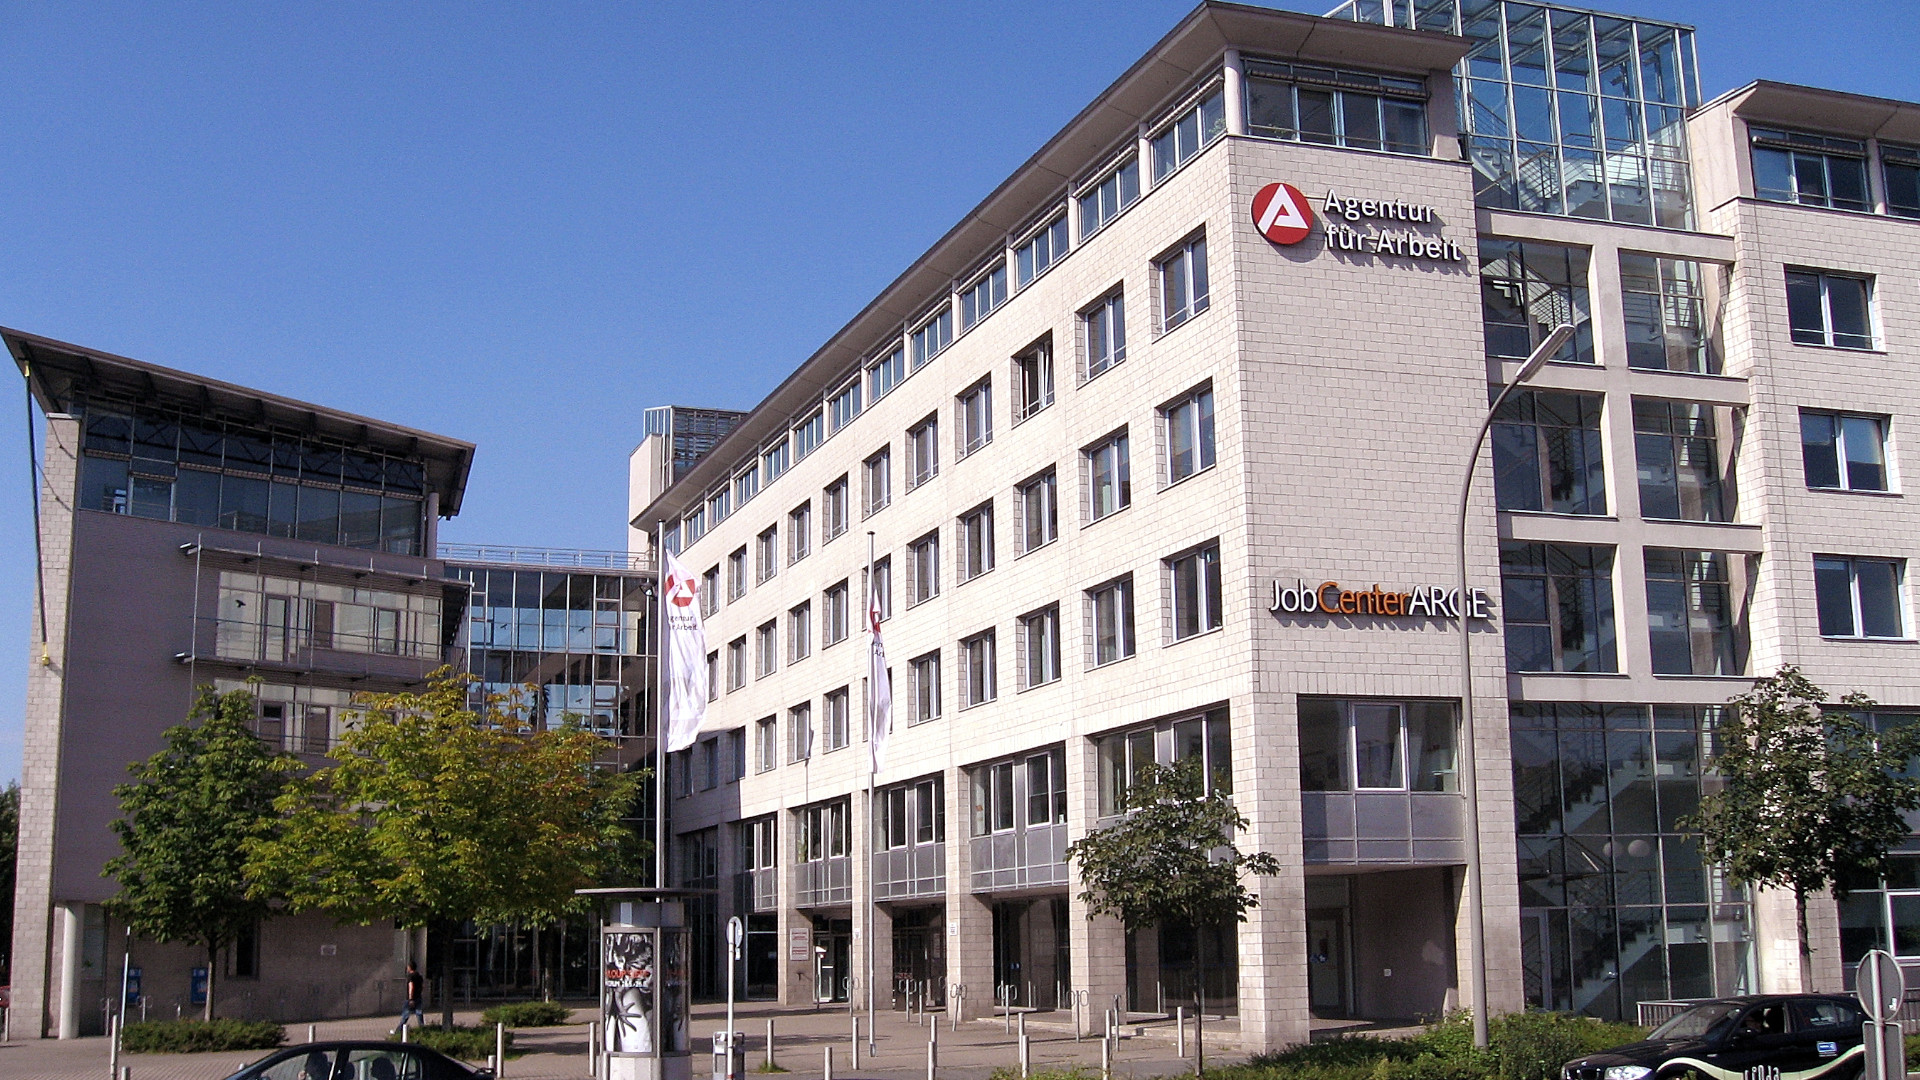 Agentur für Arbeit Dortmund